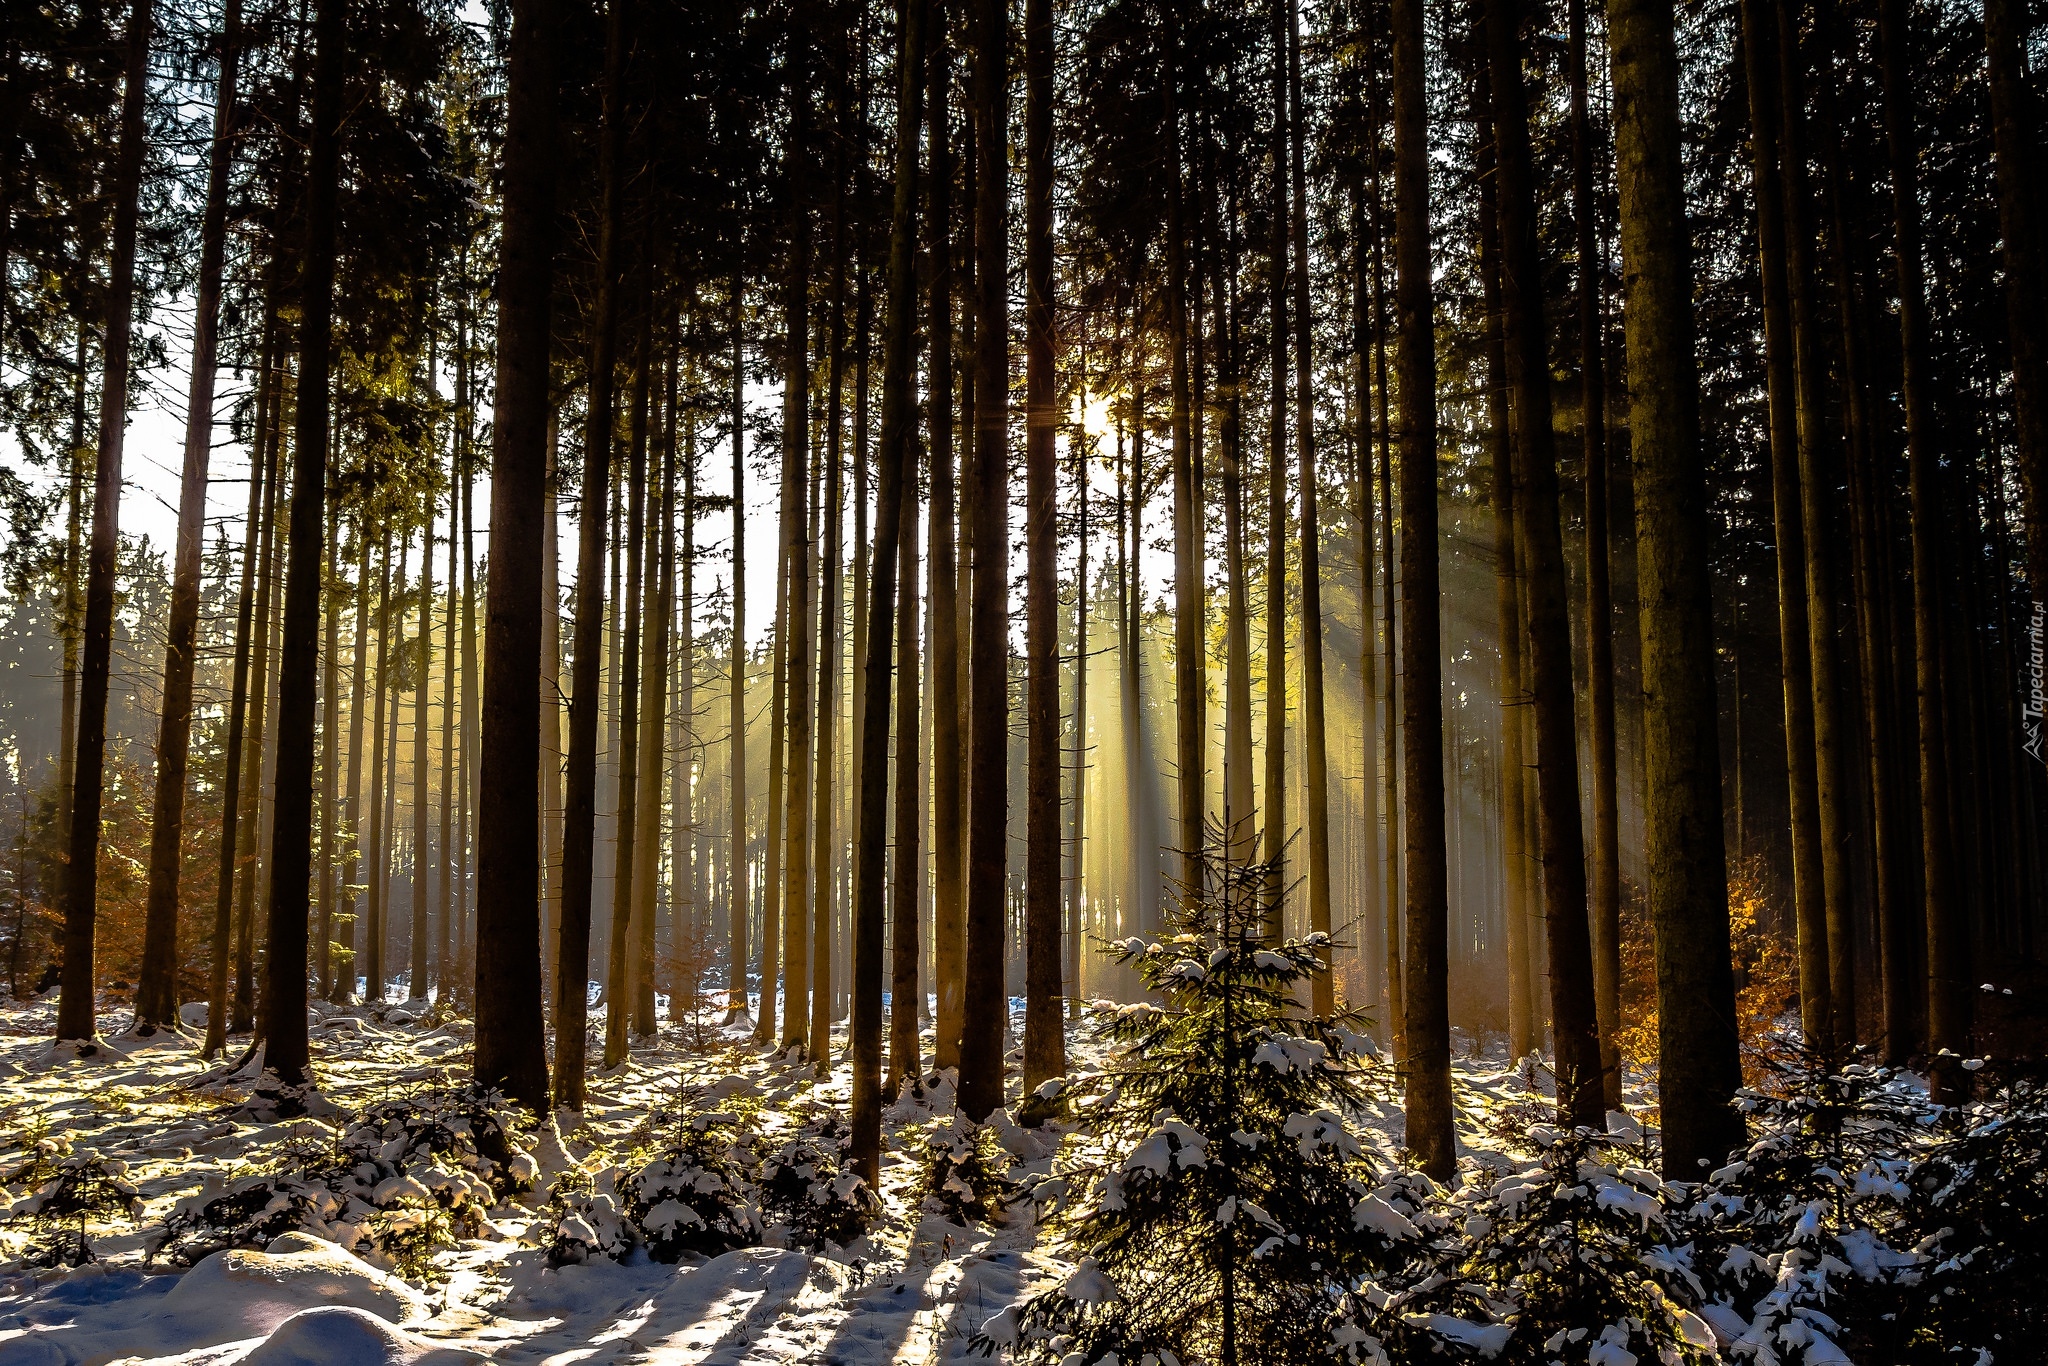 Las, Drzewa, Przebijające światło, Zima